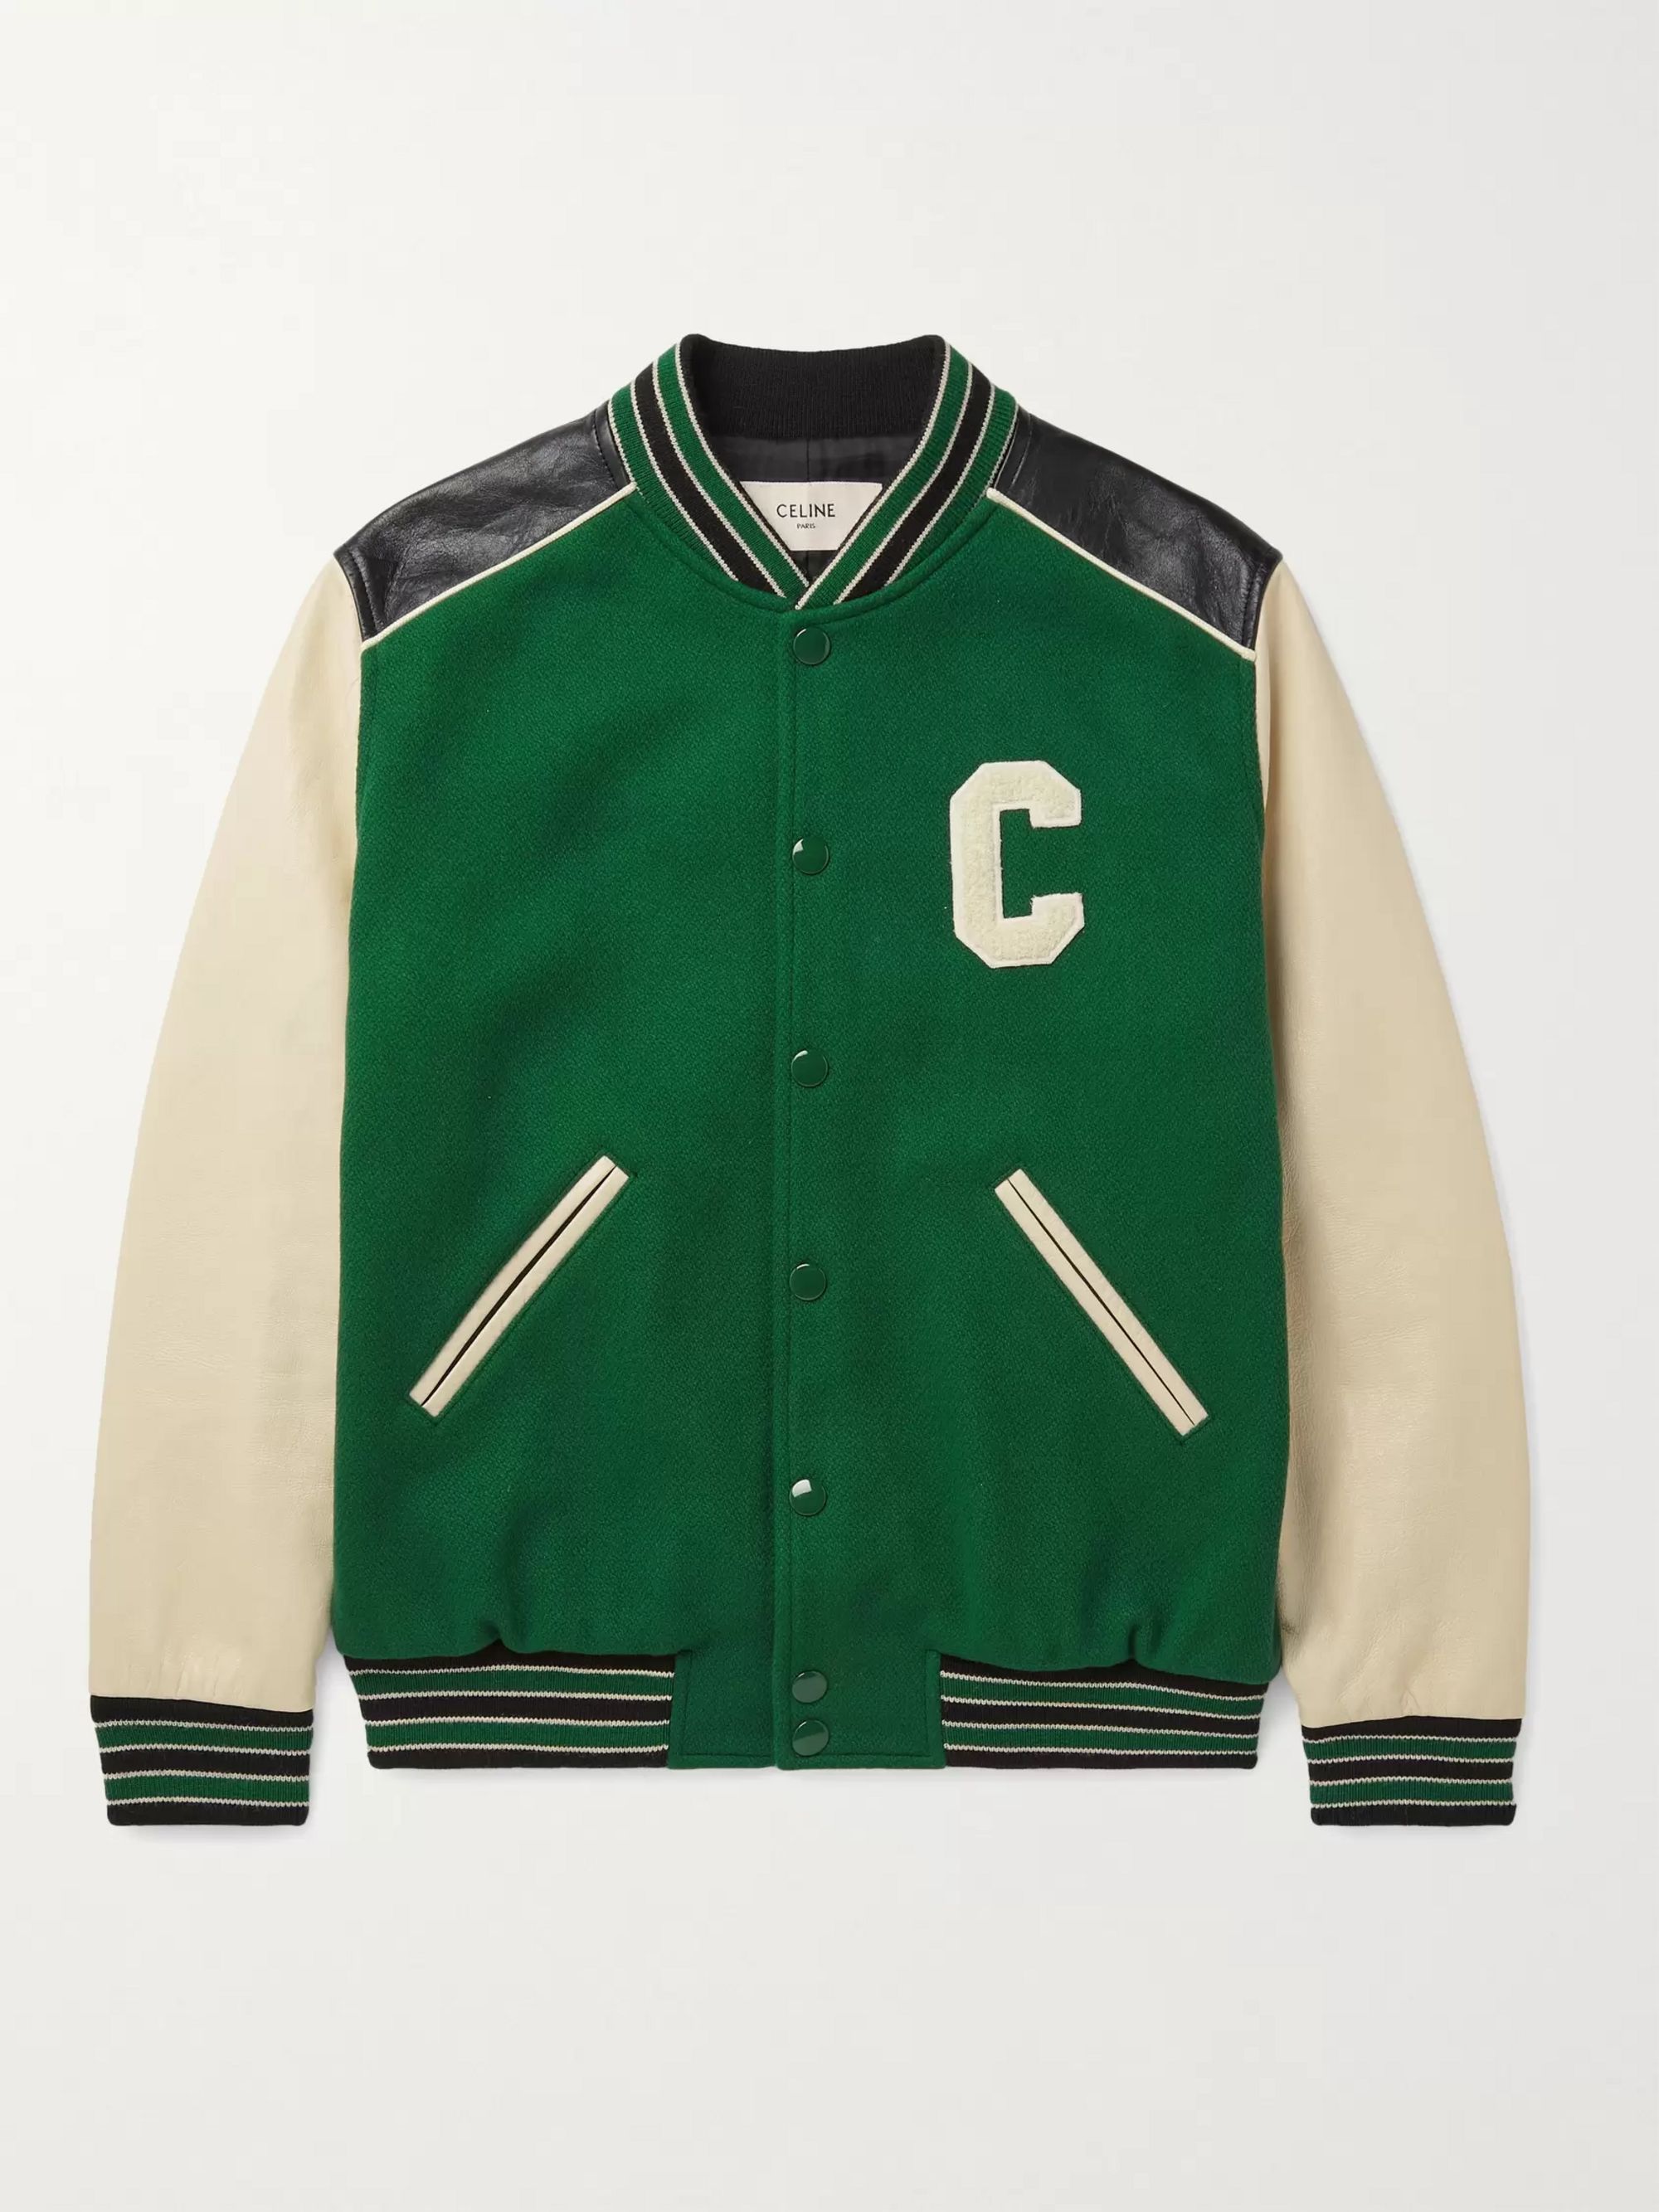 Baseball Varsity Jacket Bomber Jacket | Leather /& Wool Jacket College Jacket Letterman